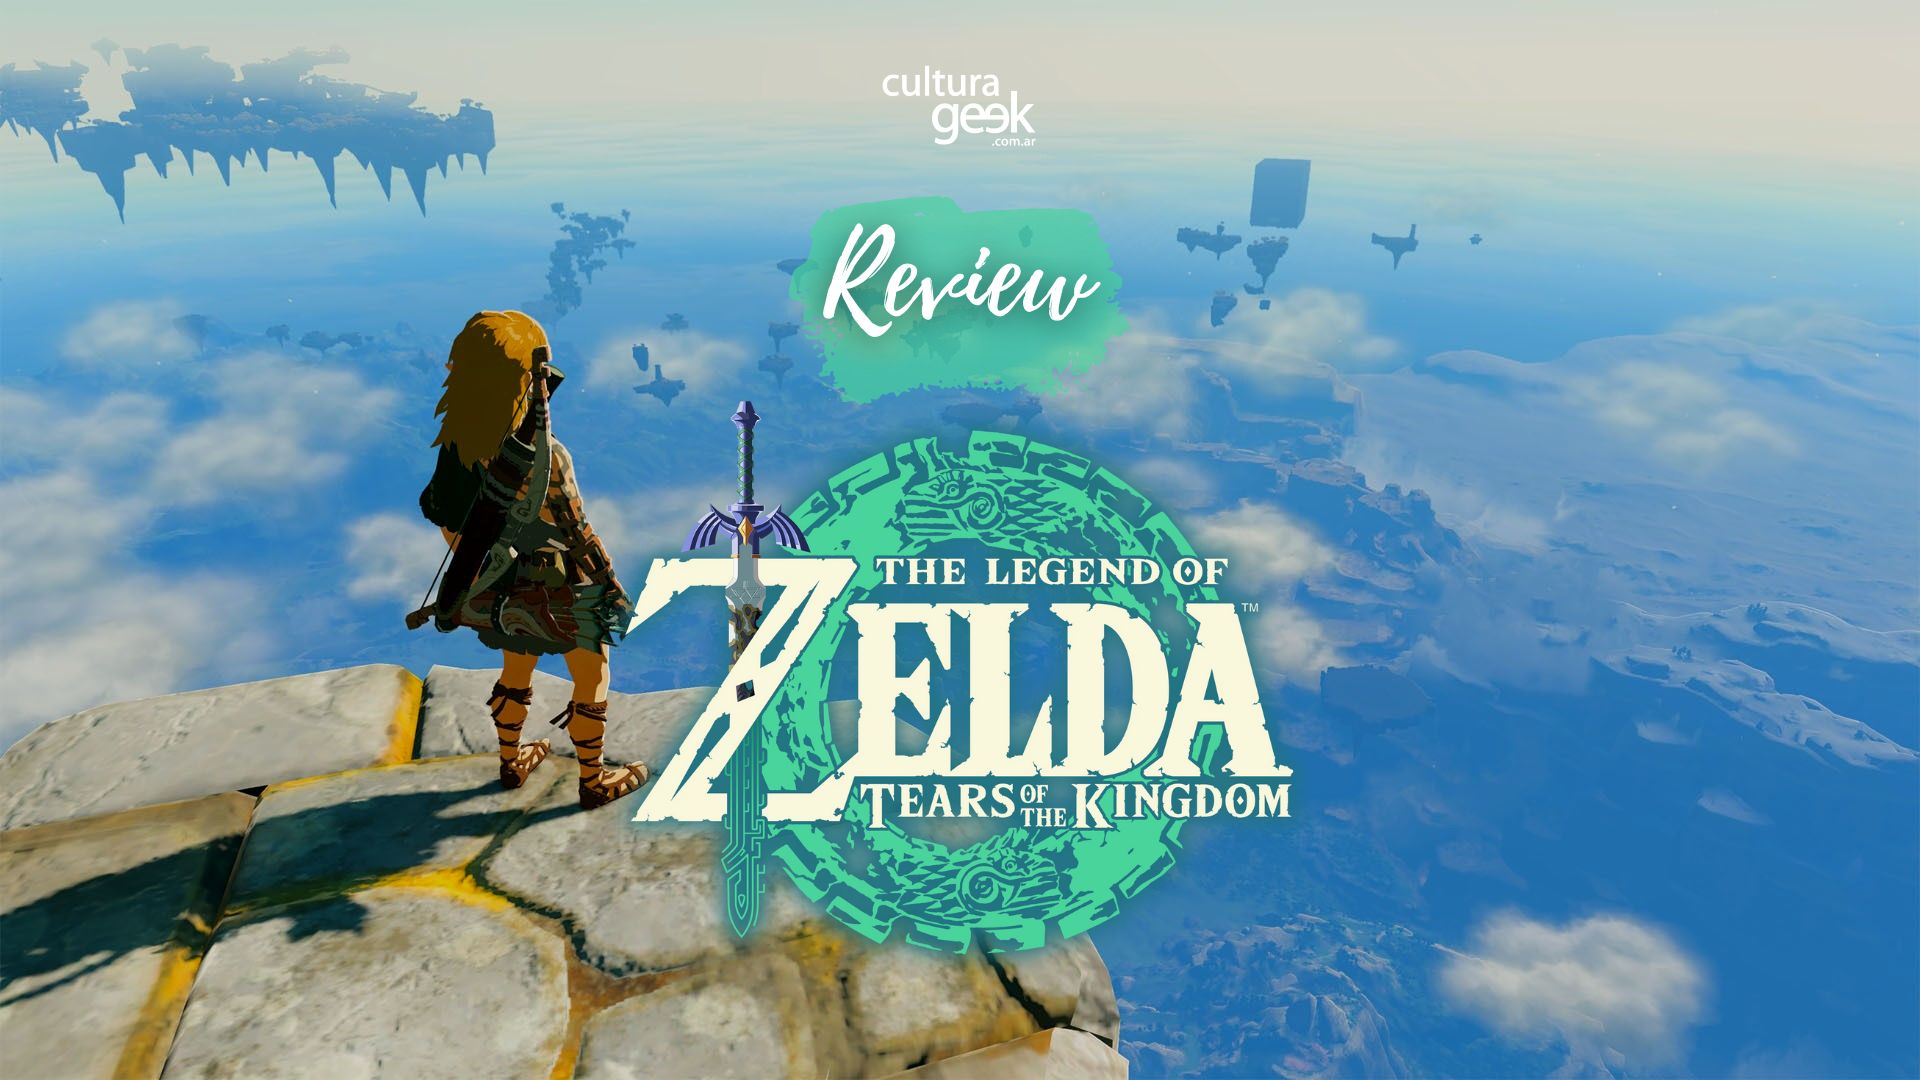 The Legend of Zelda: Tears of the Kingdom se llena de calificaciones  perfectas en Metacritic; el candidato más fuerte al GOTY de 2023